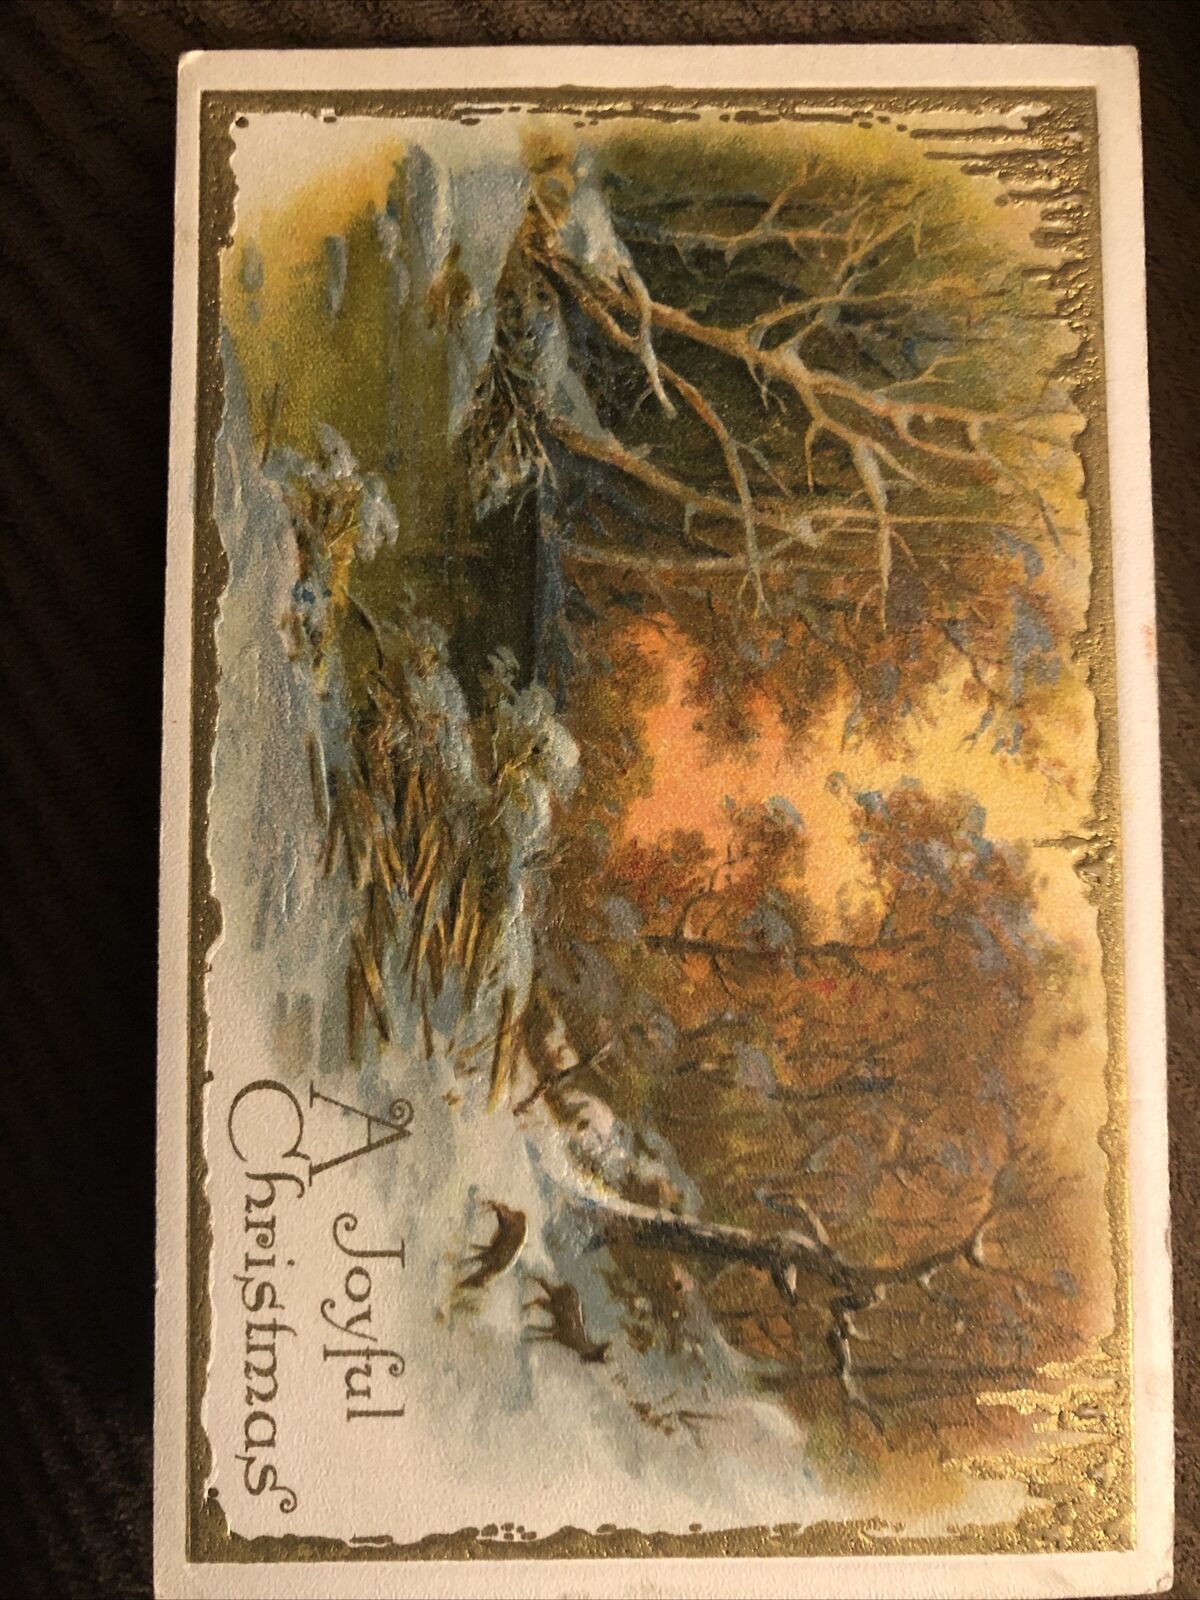 A Joyful Christmas Winsch Schmucker Antique Gold Embossed Postcard 1910